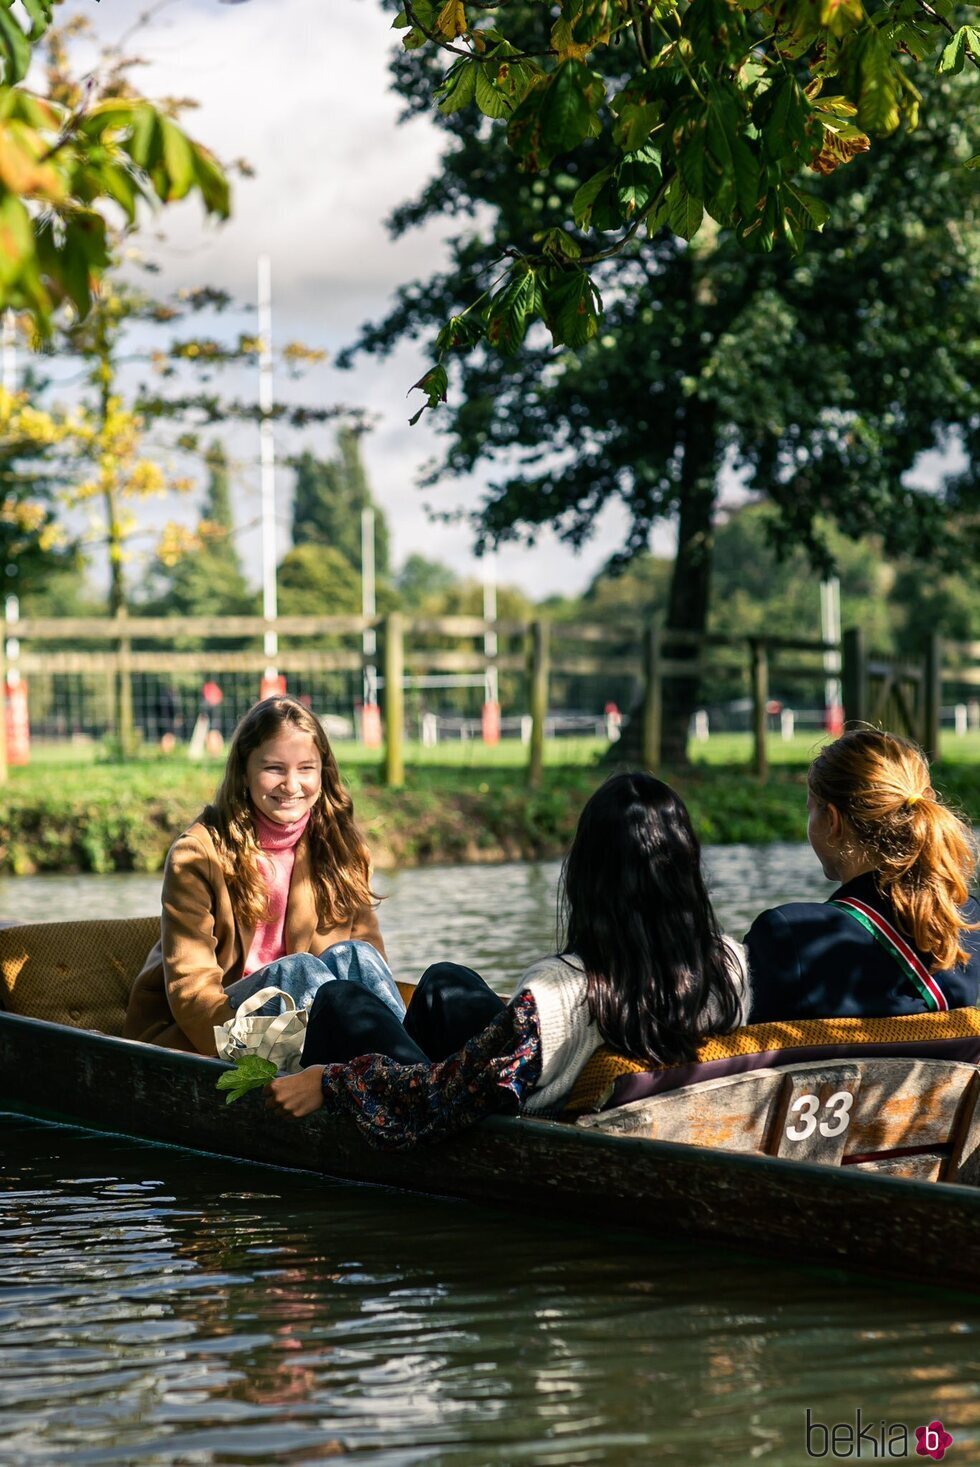 Isabel de Bélgica recorre los canales de Oxford con dos amigas